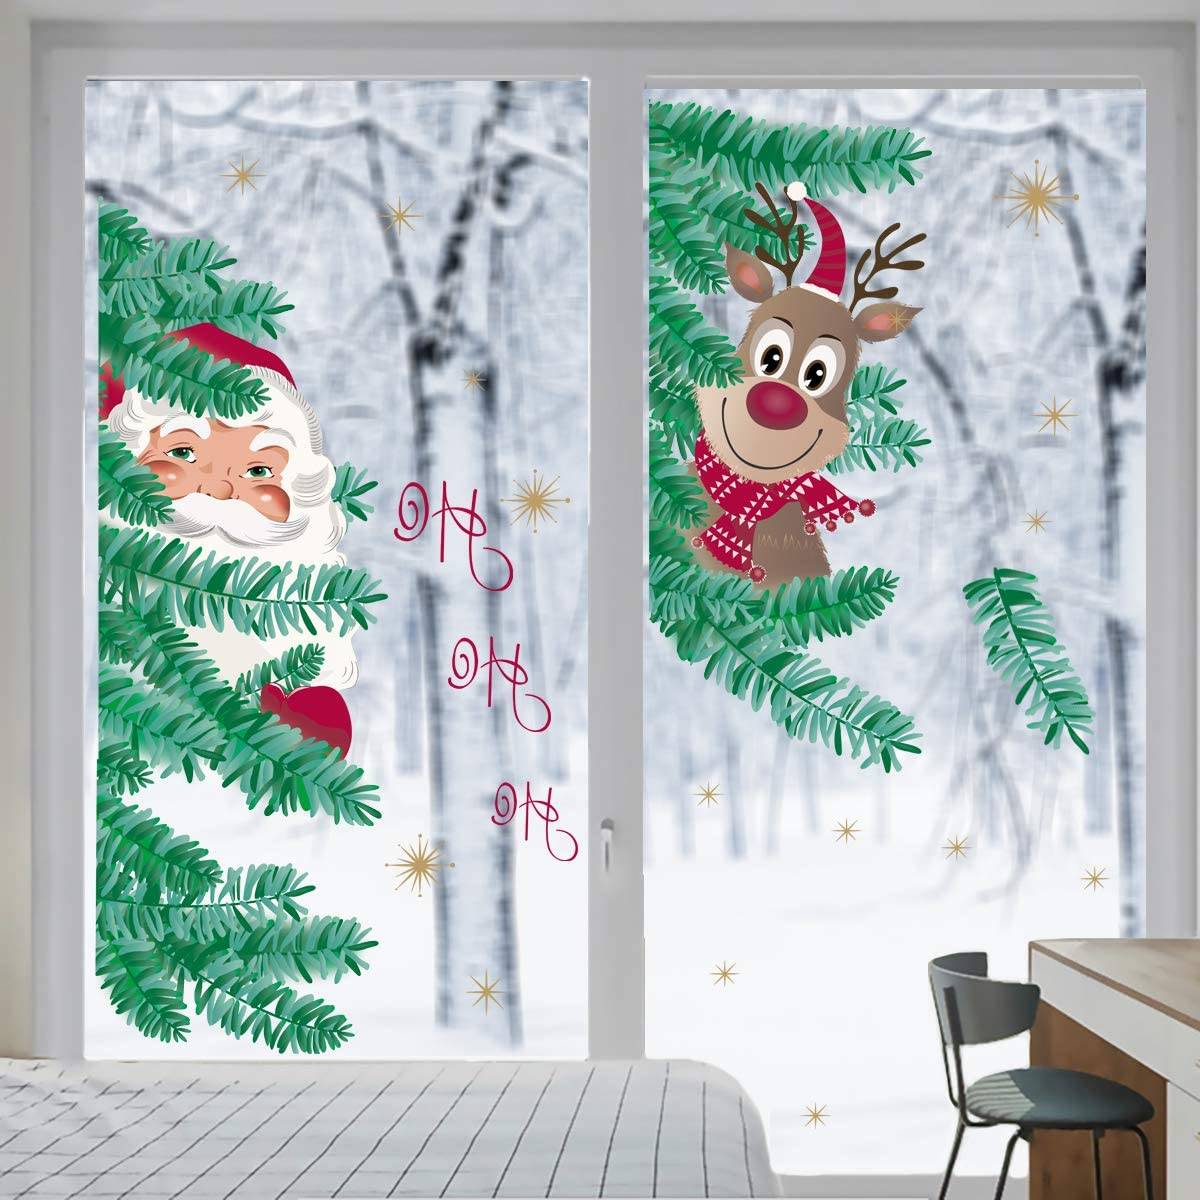 Vinilo decorativo para ventanas con dibujos de Santa Claus y un reno entre los árboles